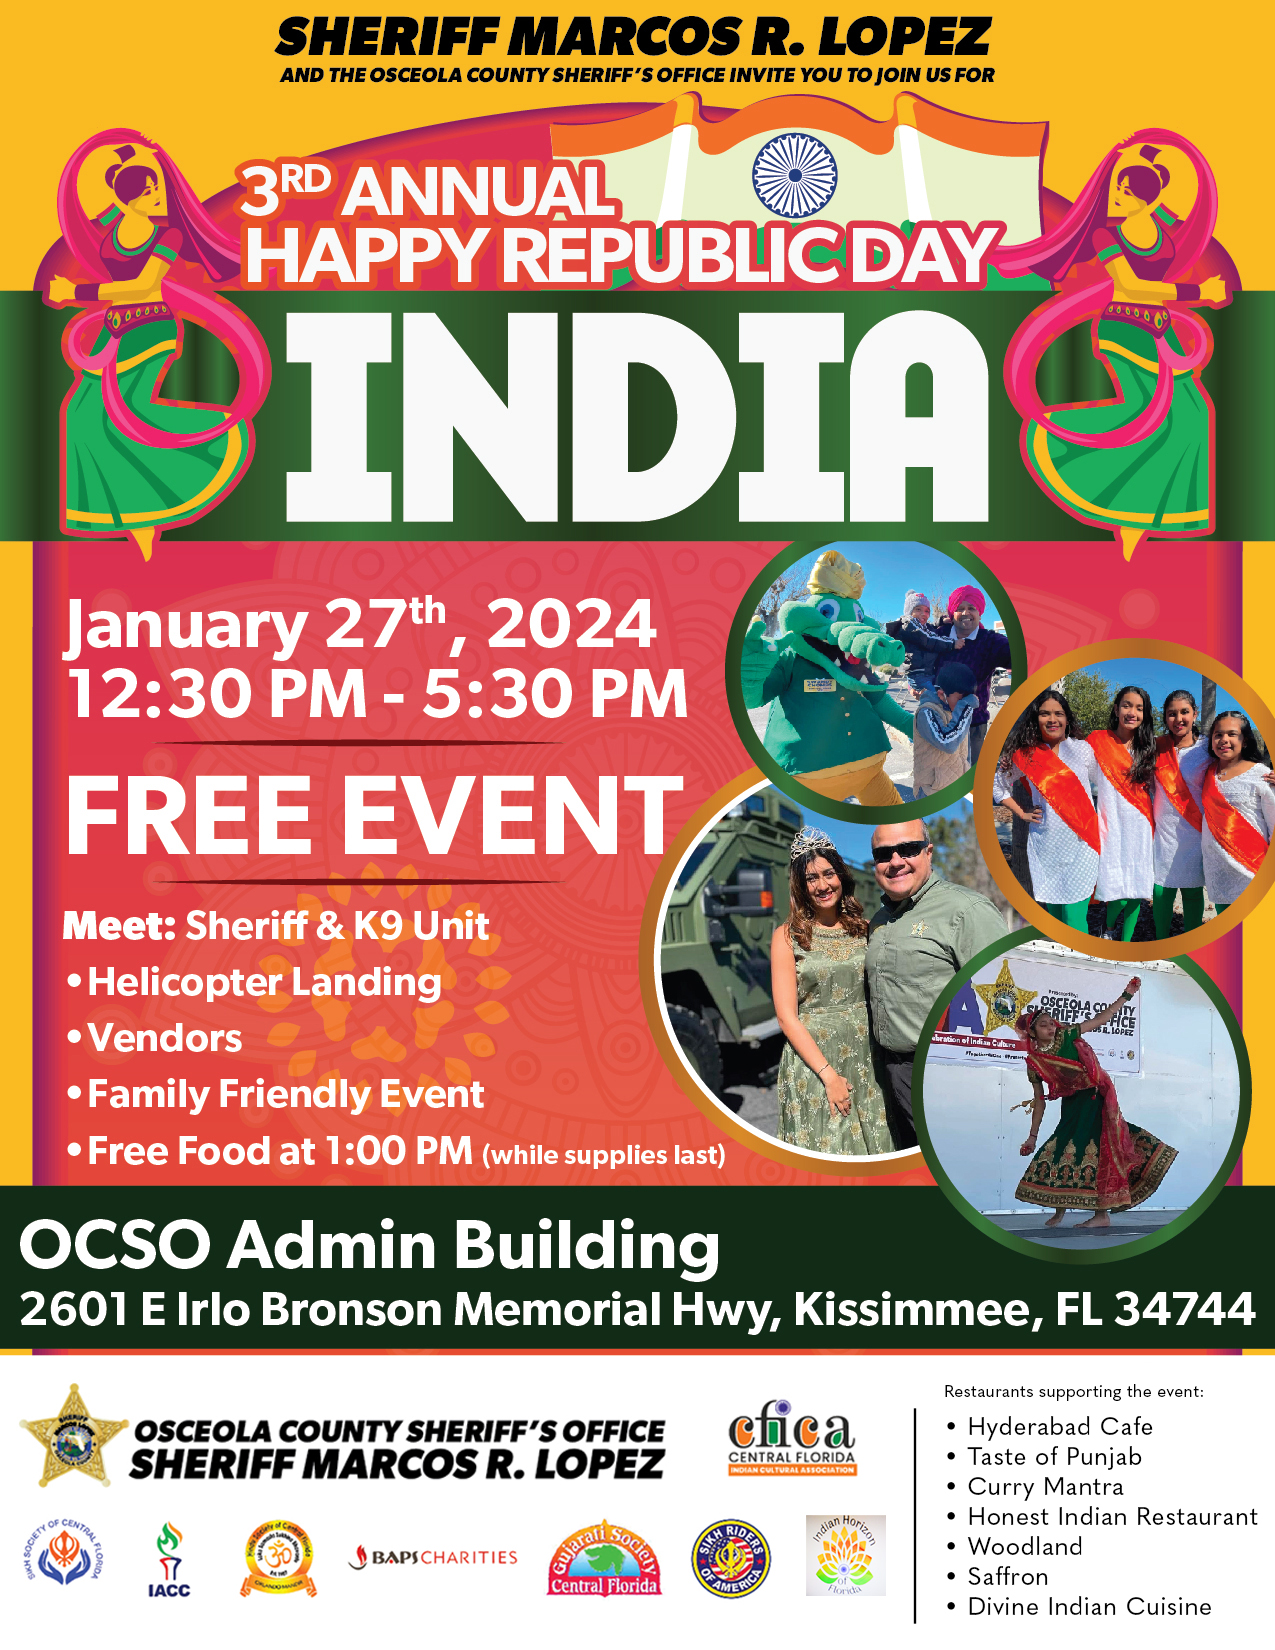 3rd Annual Happy Republica Day - INDIA